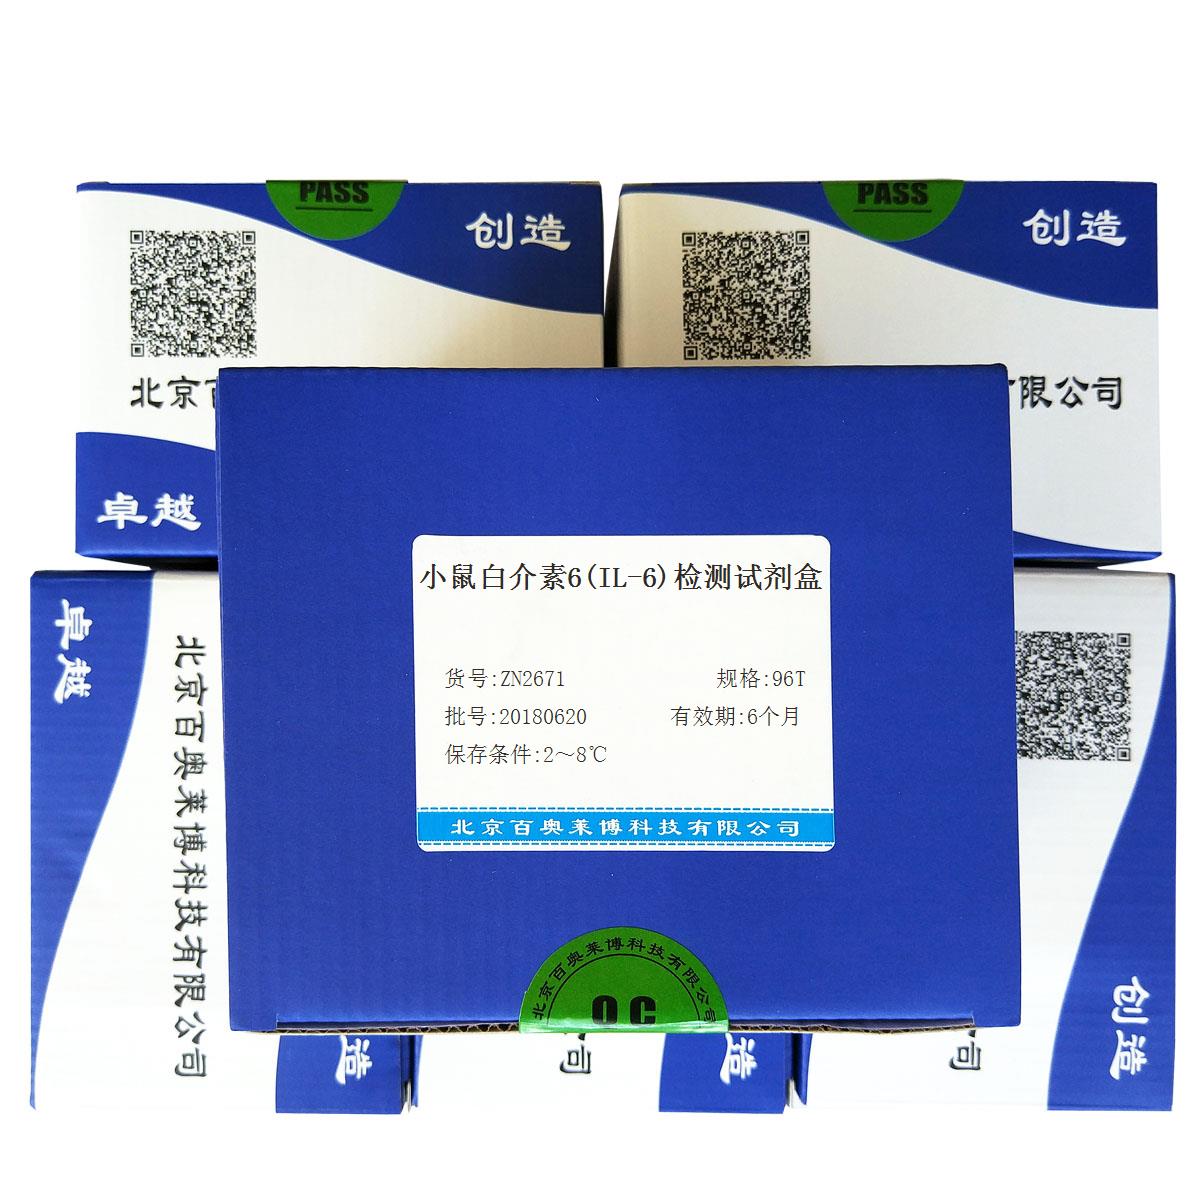 北京现货小鼠白介素6(IL-6)检测试剂盒特价促销